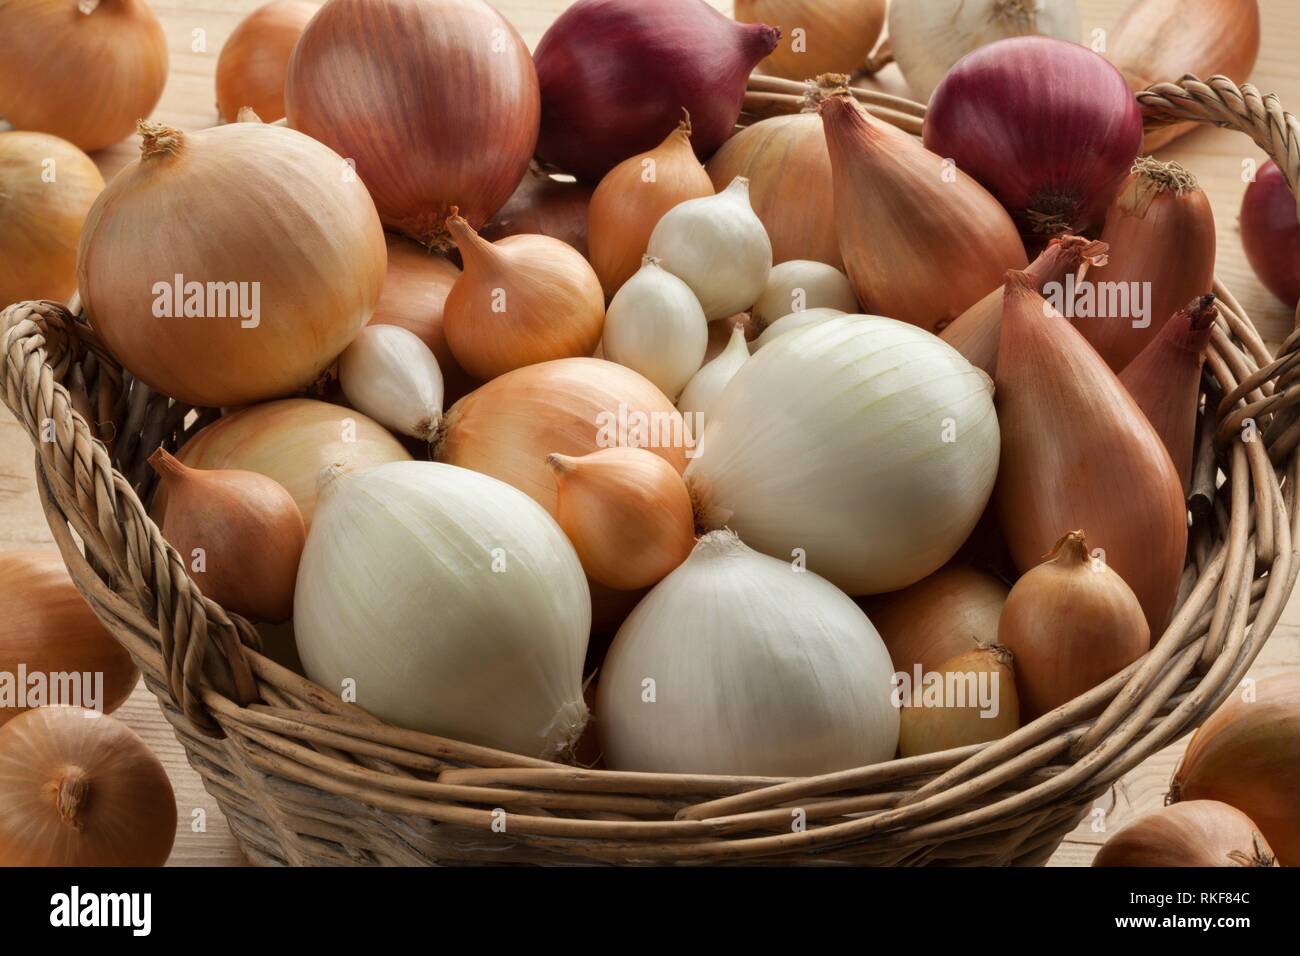 Diversidad de cebolla cruda fresca en una canasta. Foto de stock